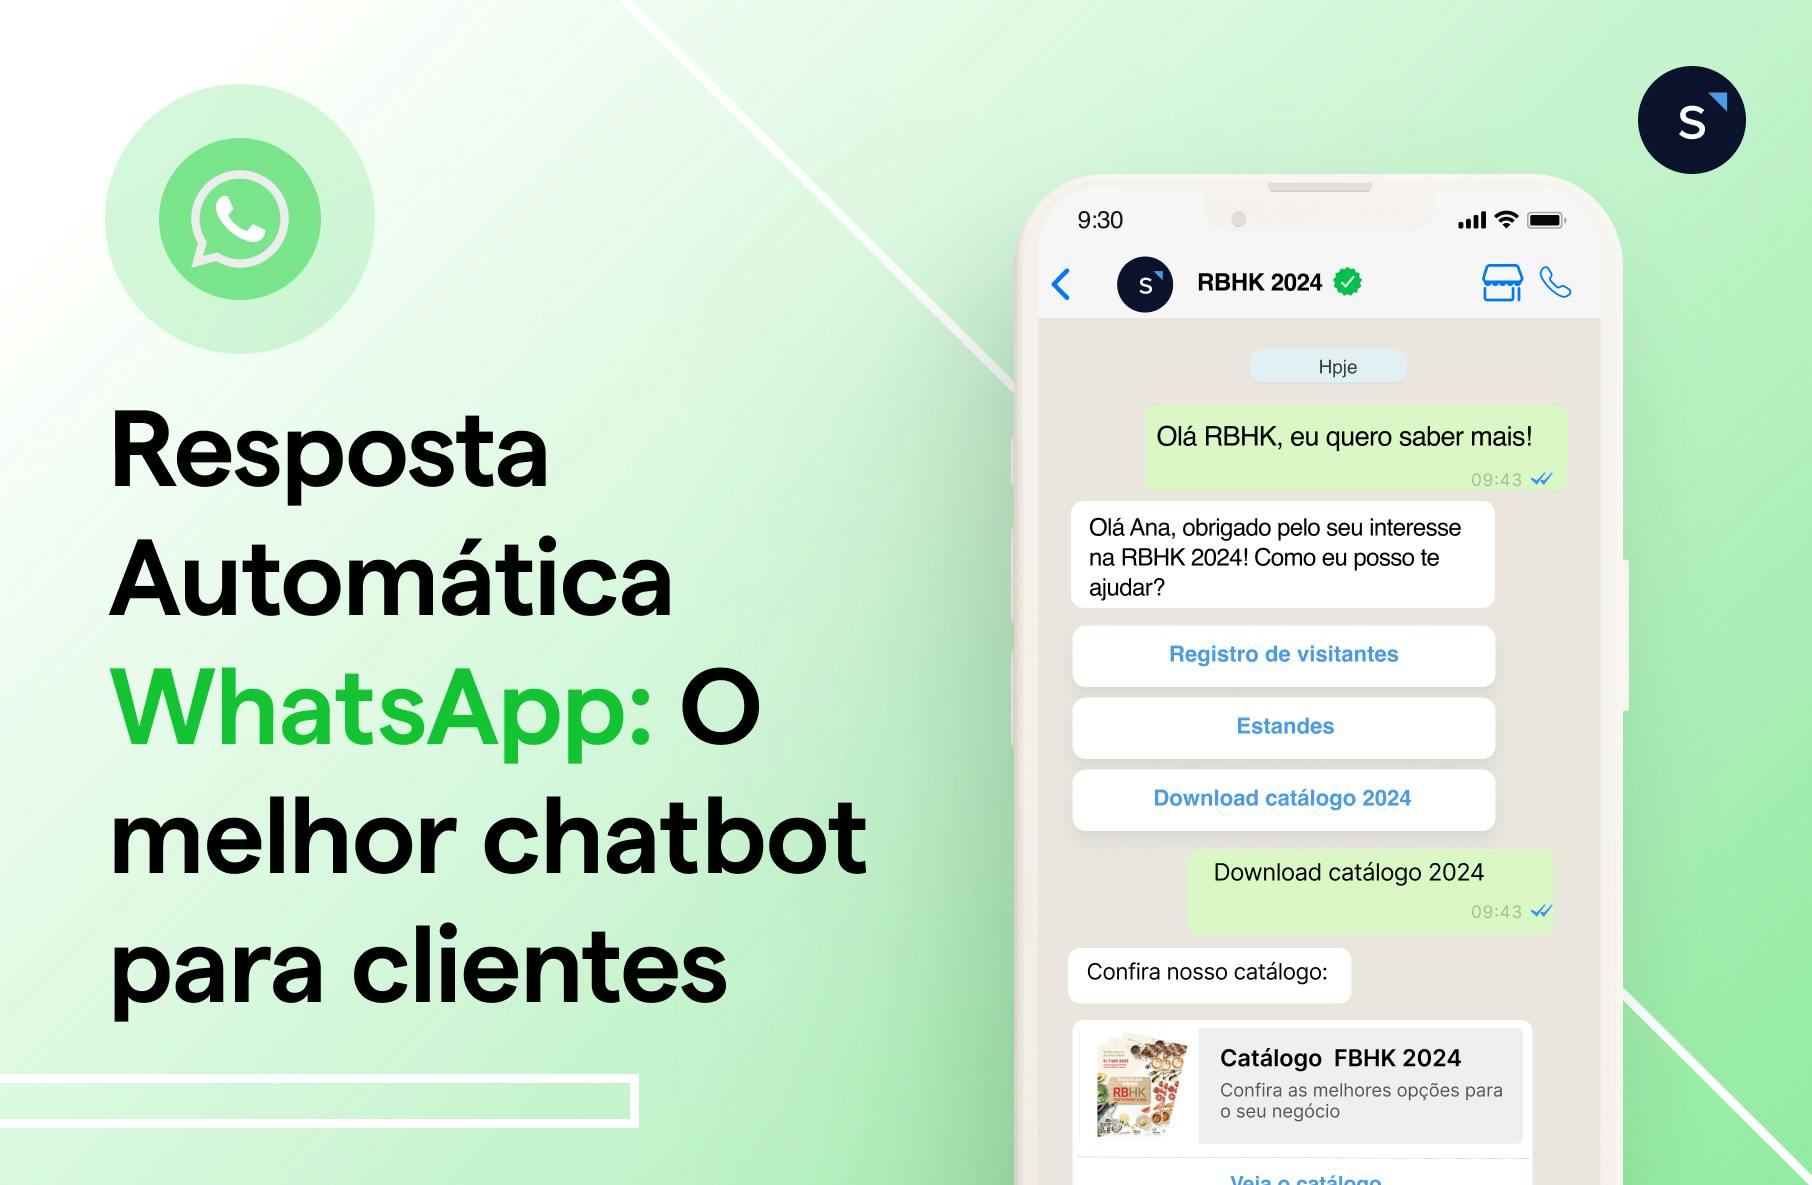 Resposta automática WhatsApp: O melhor chatbot para clientes